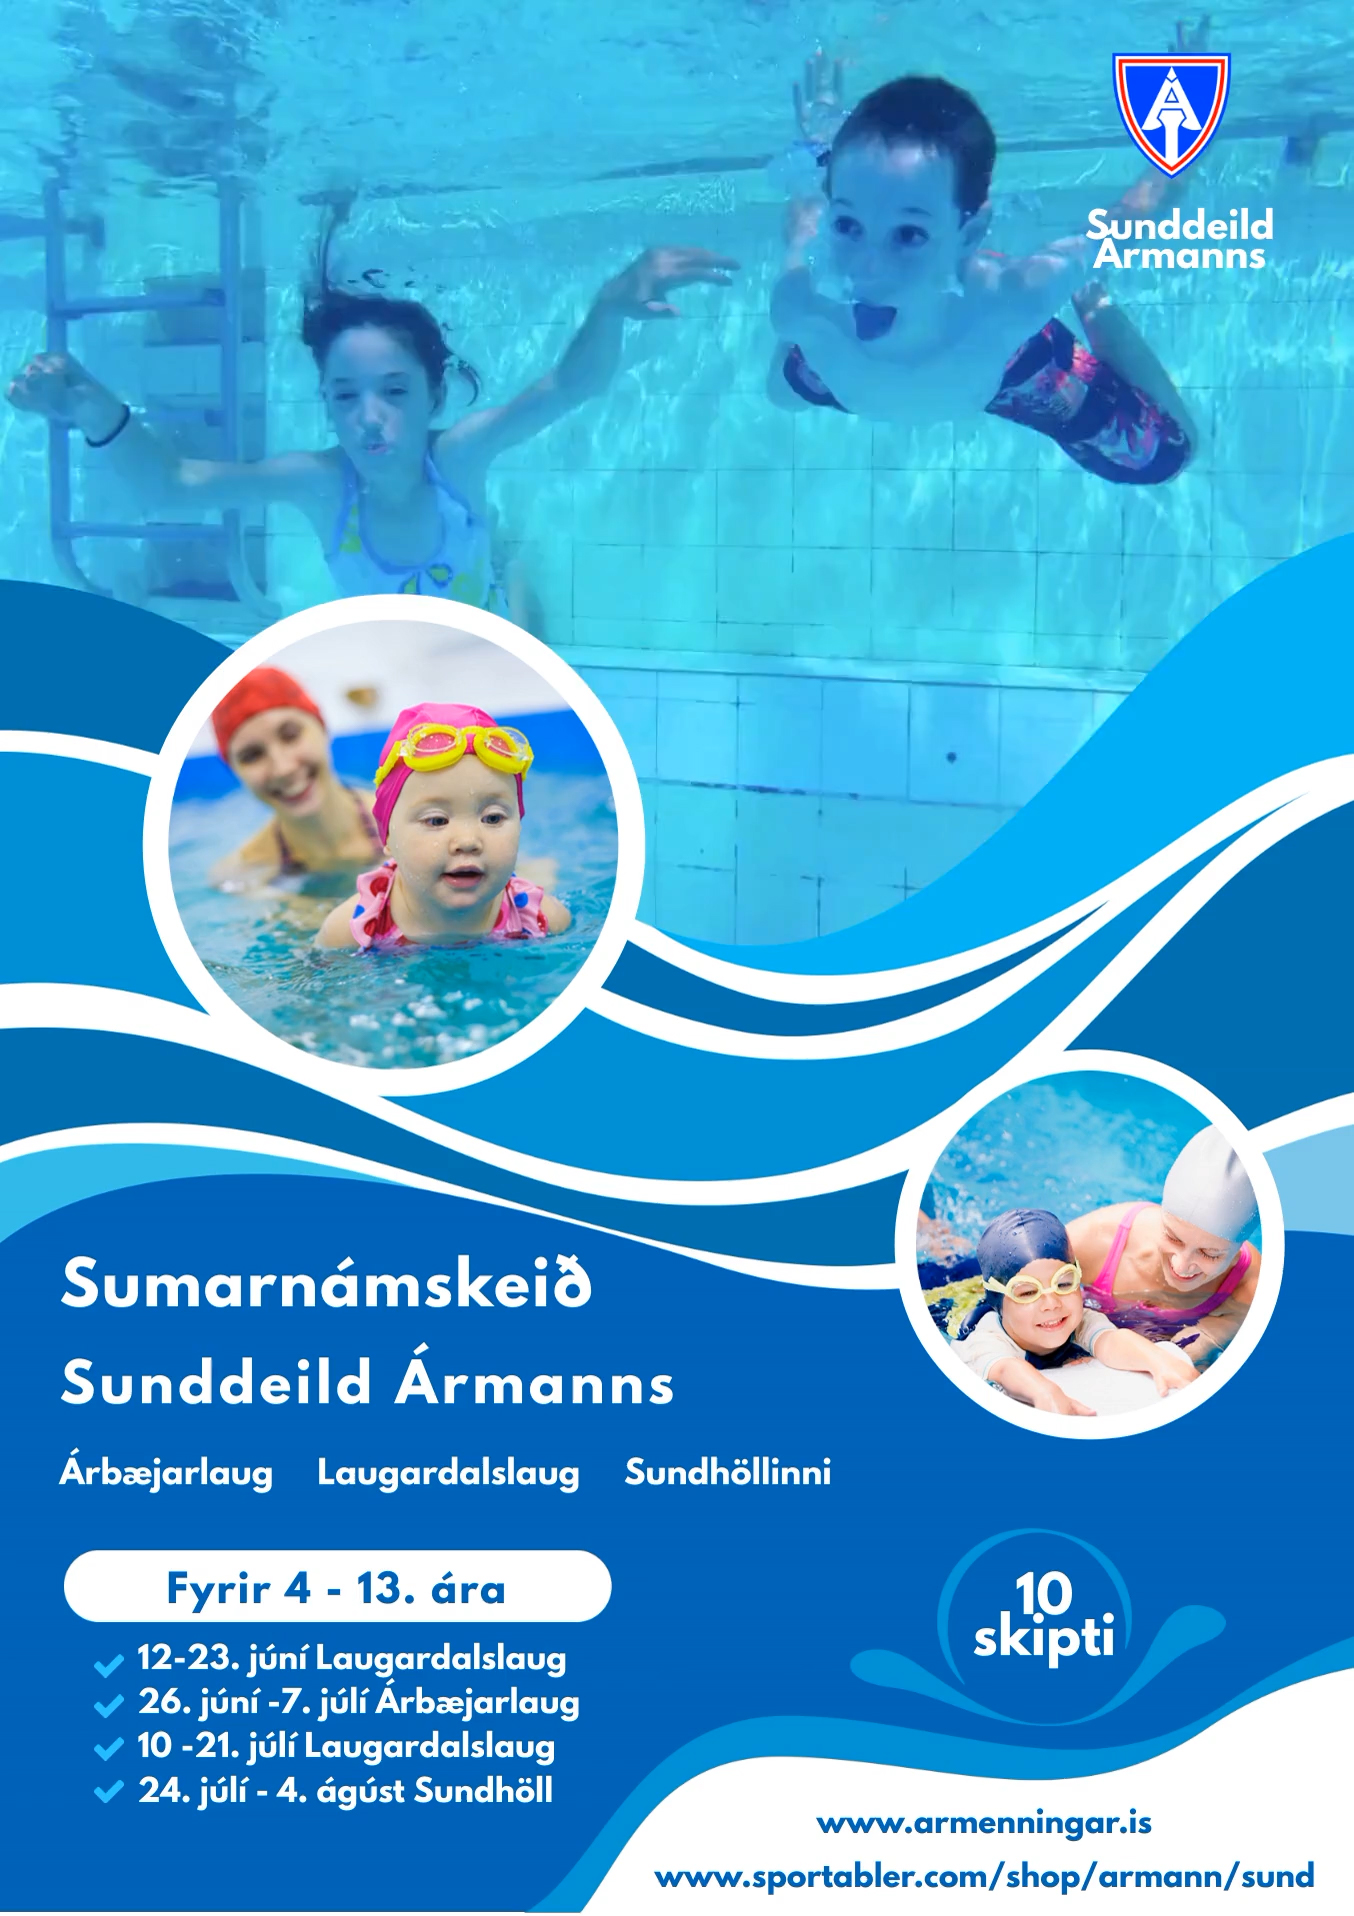 Sumarnámskeið Sunddeildar Ármanns - Summer Swimming Courses